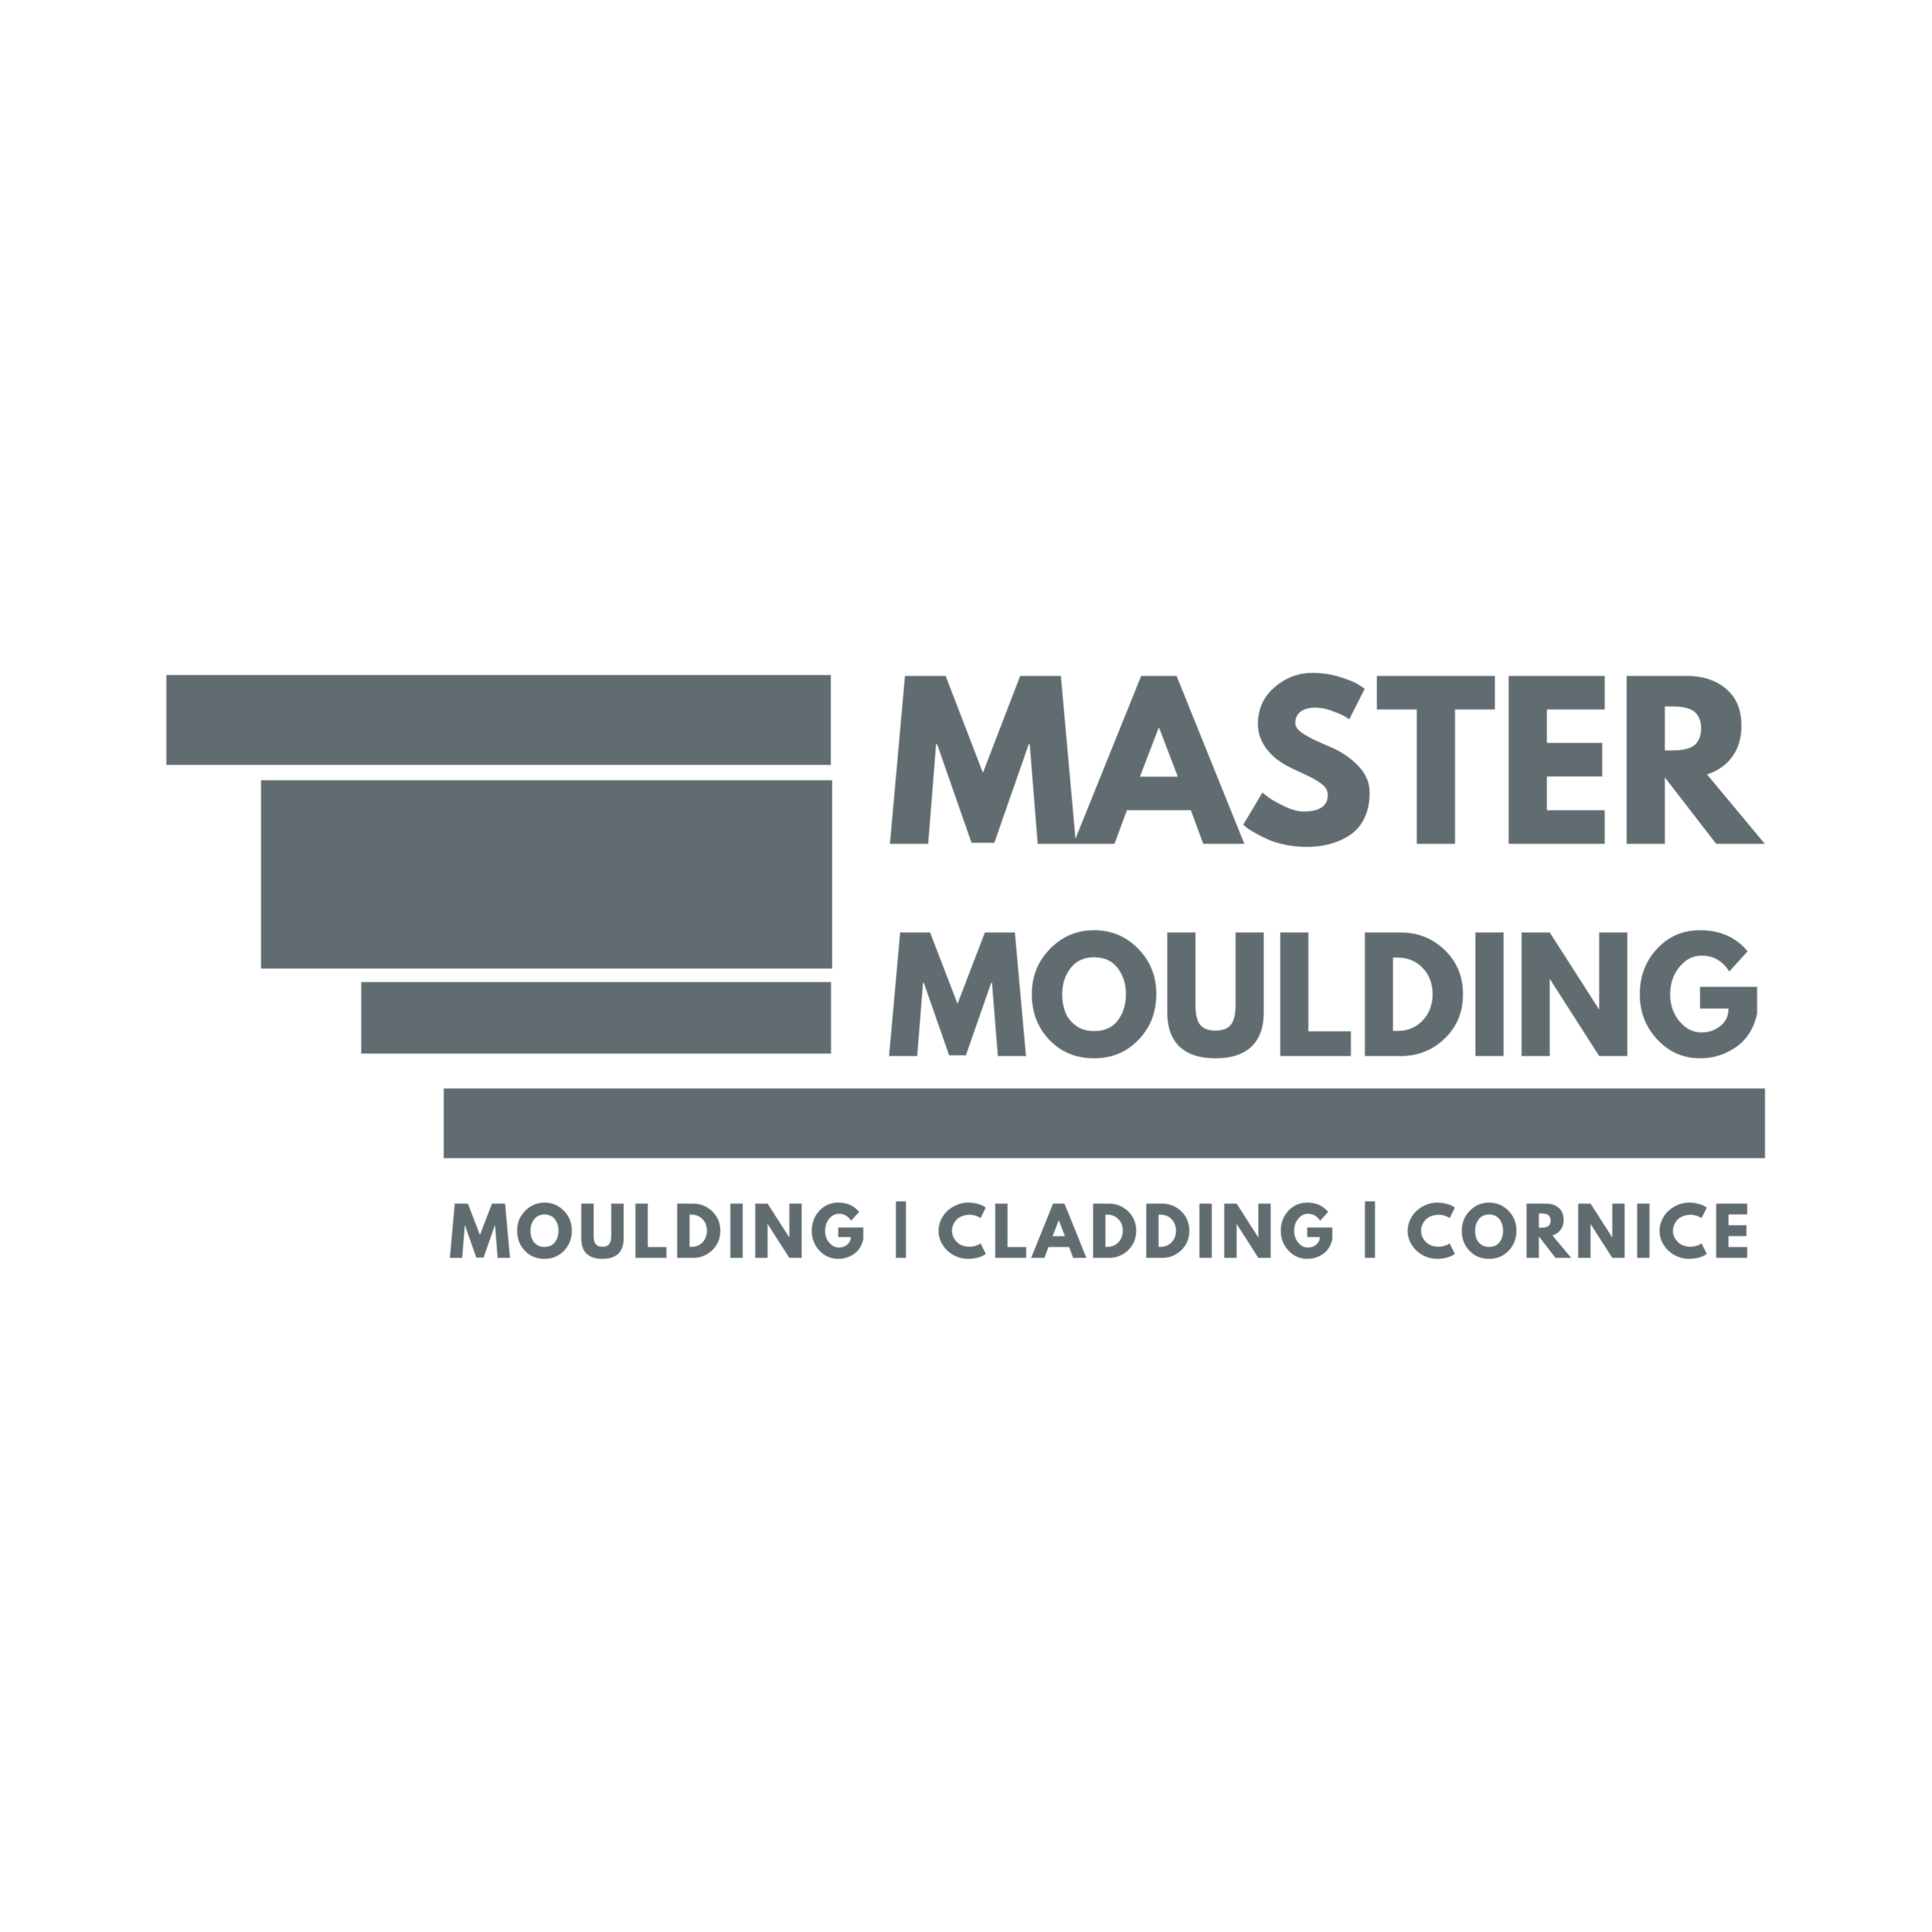 Master Moulding